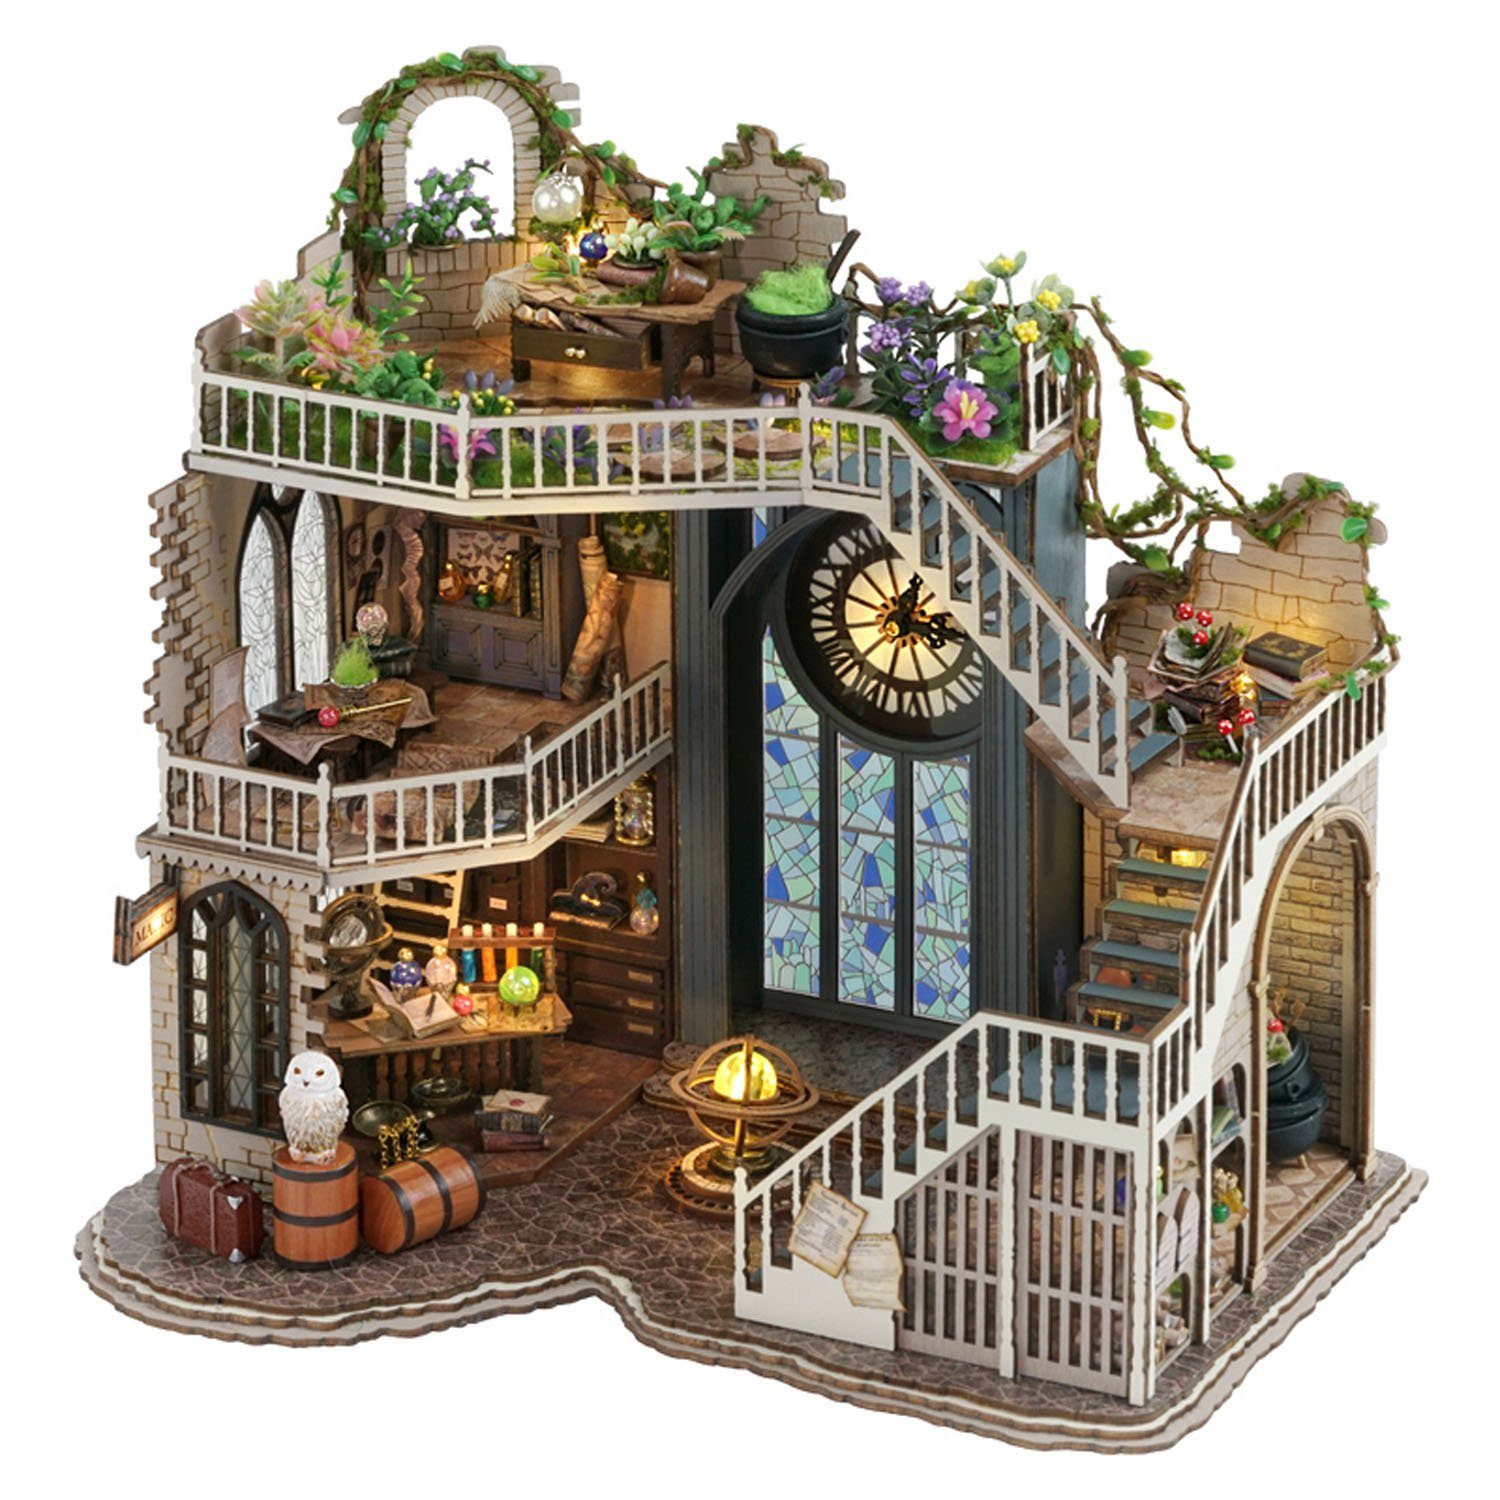 Cute Room 3D пазлы Puppenhaus Miniatur DIY Modellbausatz Magic House, Пазлыteile, 3D пазлы Modellbausatz 1:24 mit Möbeln zum Basteln-Serie Mini Szenen